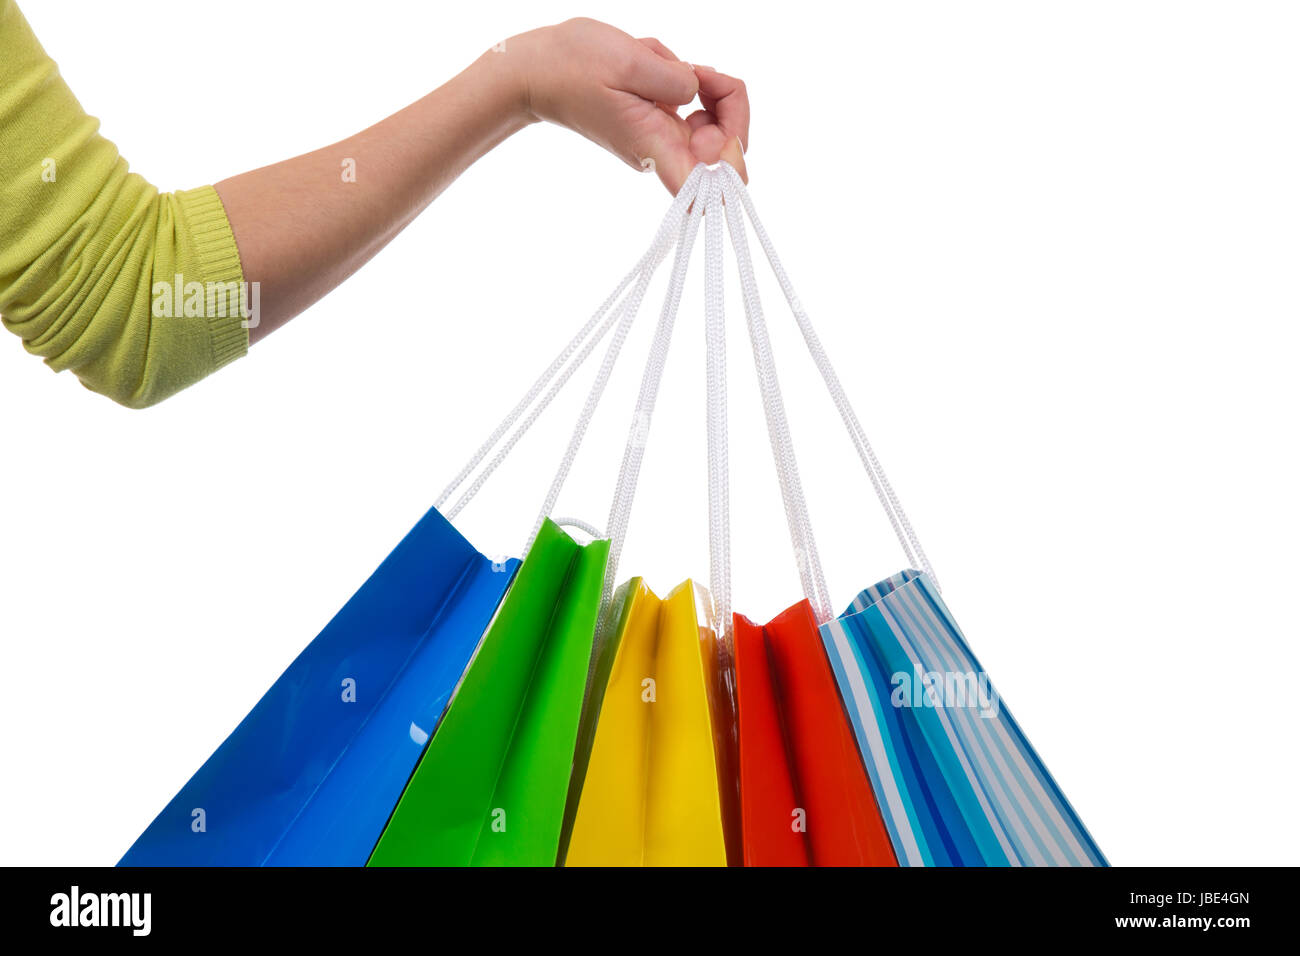 Eine junge Frau hält Einkaufstaschen fürs Shopping in der Hand, isoliert vor einem weissen Hintergrund Stock Photo